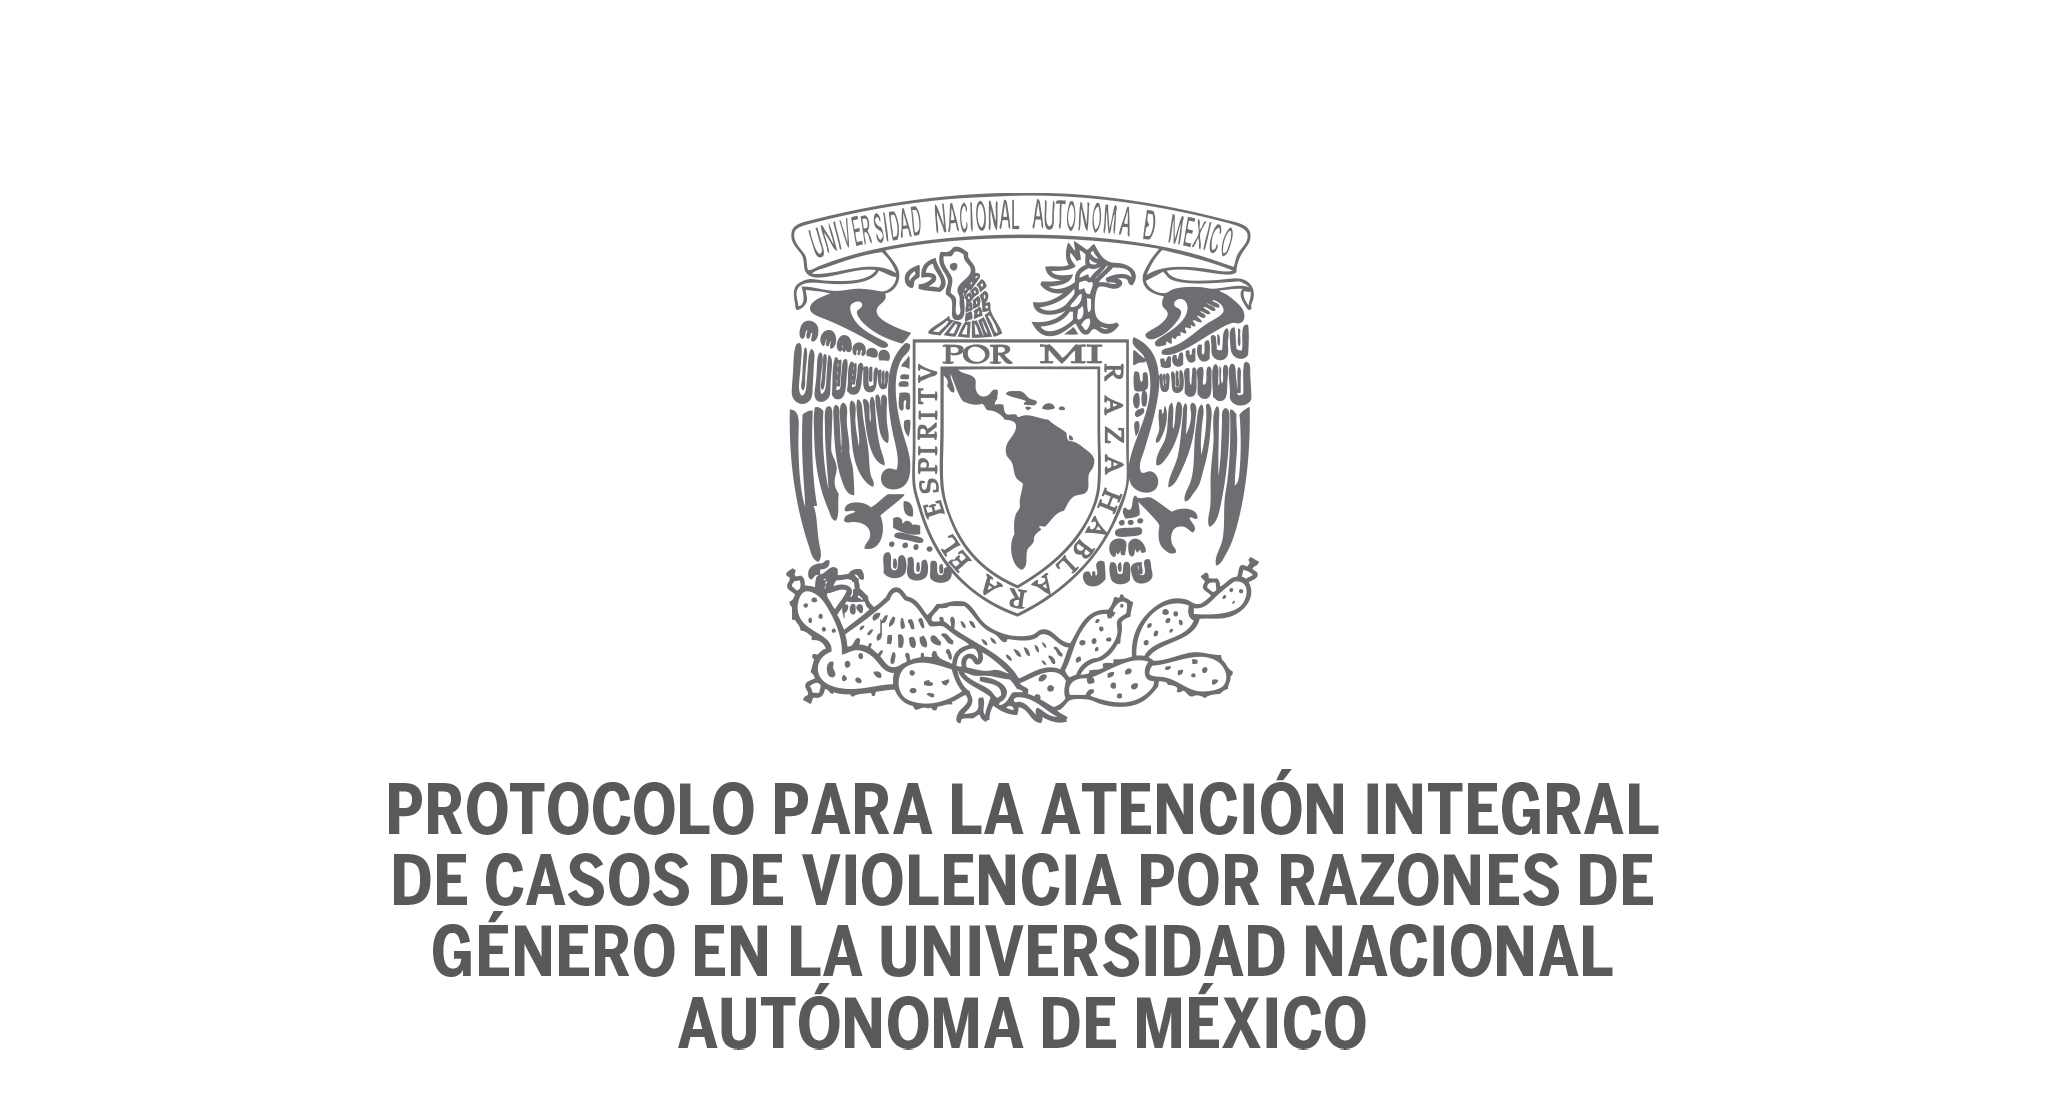 Protocolo para la atención integral de casos de violencia por razones de género en la UNAM